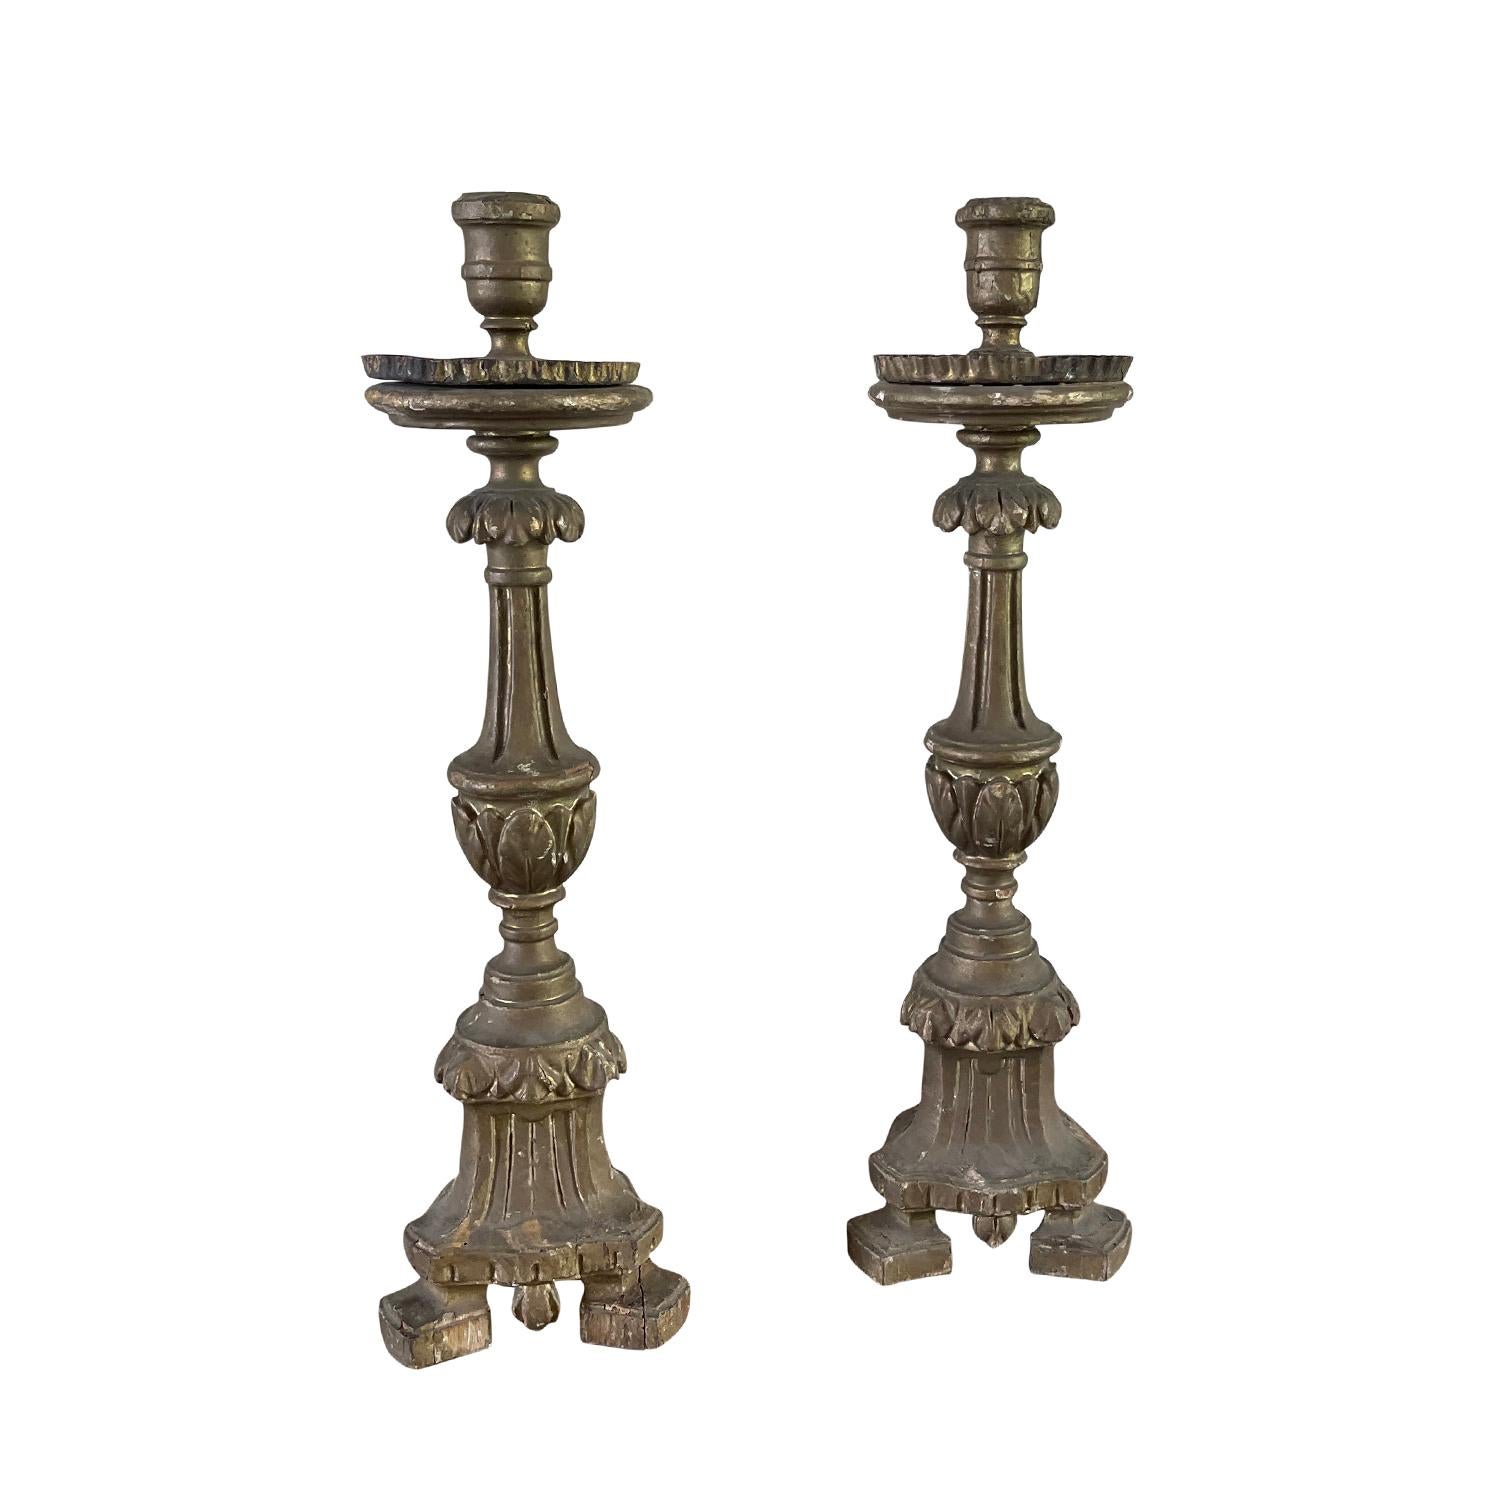 Ein antikes französisches Paar Kerzenständer aus der Mitte des 18. Jahrhunderts aus handgefertigtem Kiefernholz, in gutem Zustand. Diese Kerzenständer haben eine bemalte Struktur, die auf einem dreibeinigen Sockel ruht. Diese Dekorationsstücke